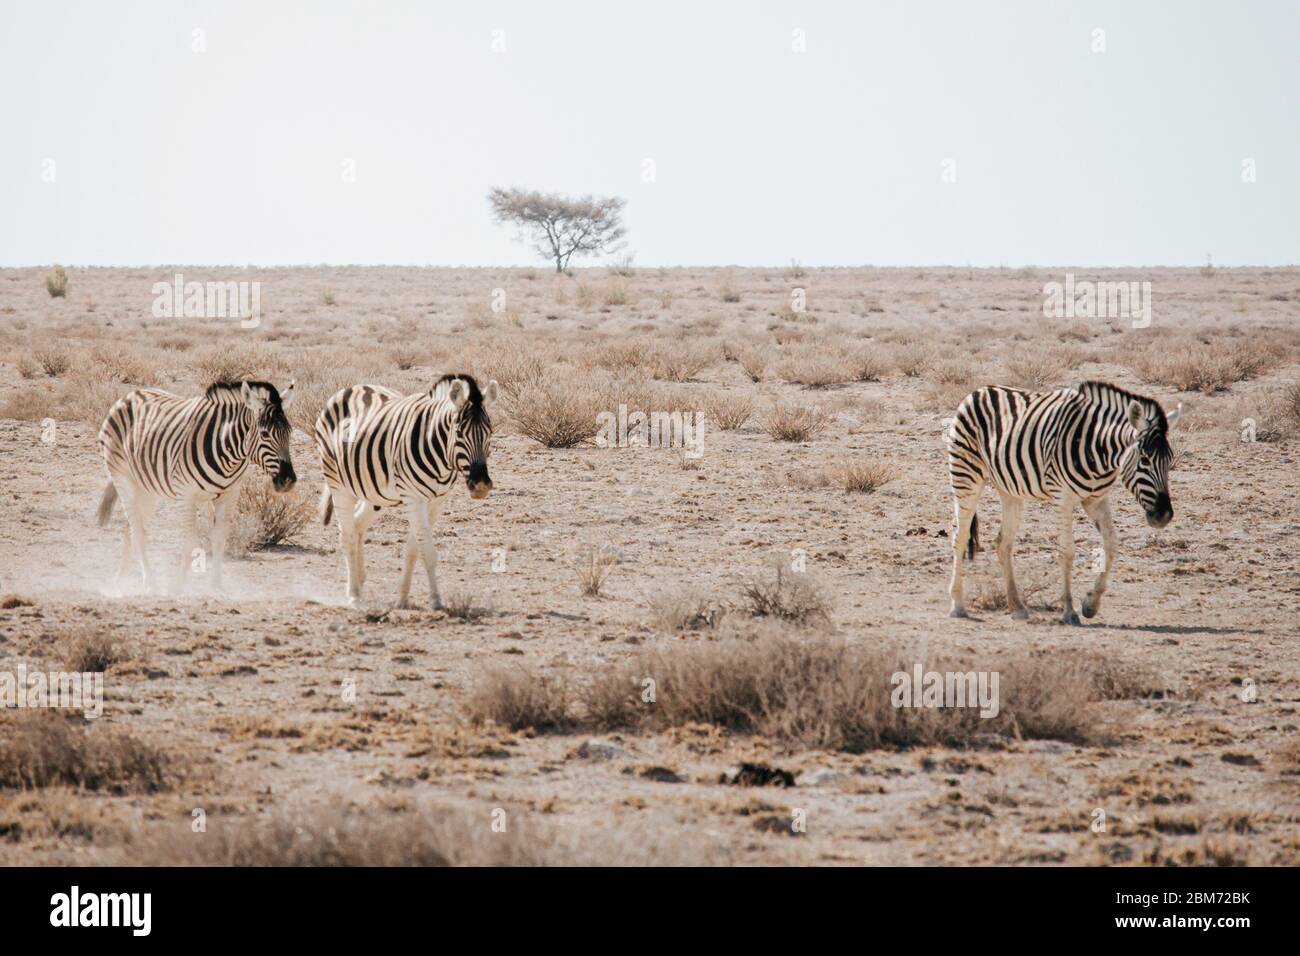 Un troupeau de zébrures se promèchent dans un paysage sec de savane parchée. Parc national d'Etosha, Namibie. Banque D'Images